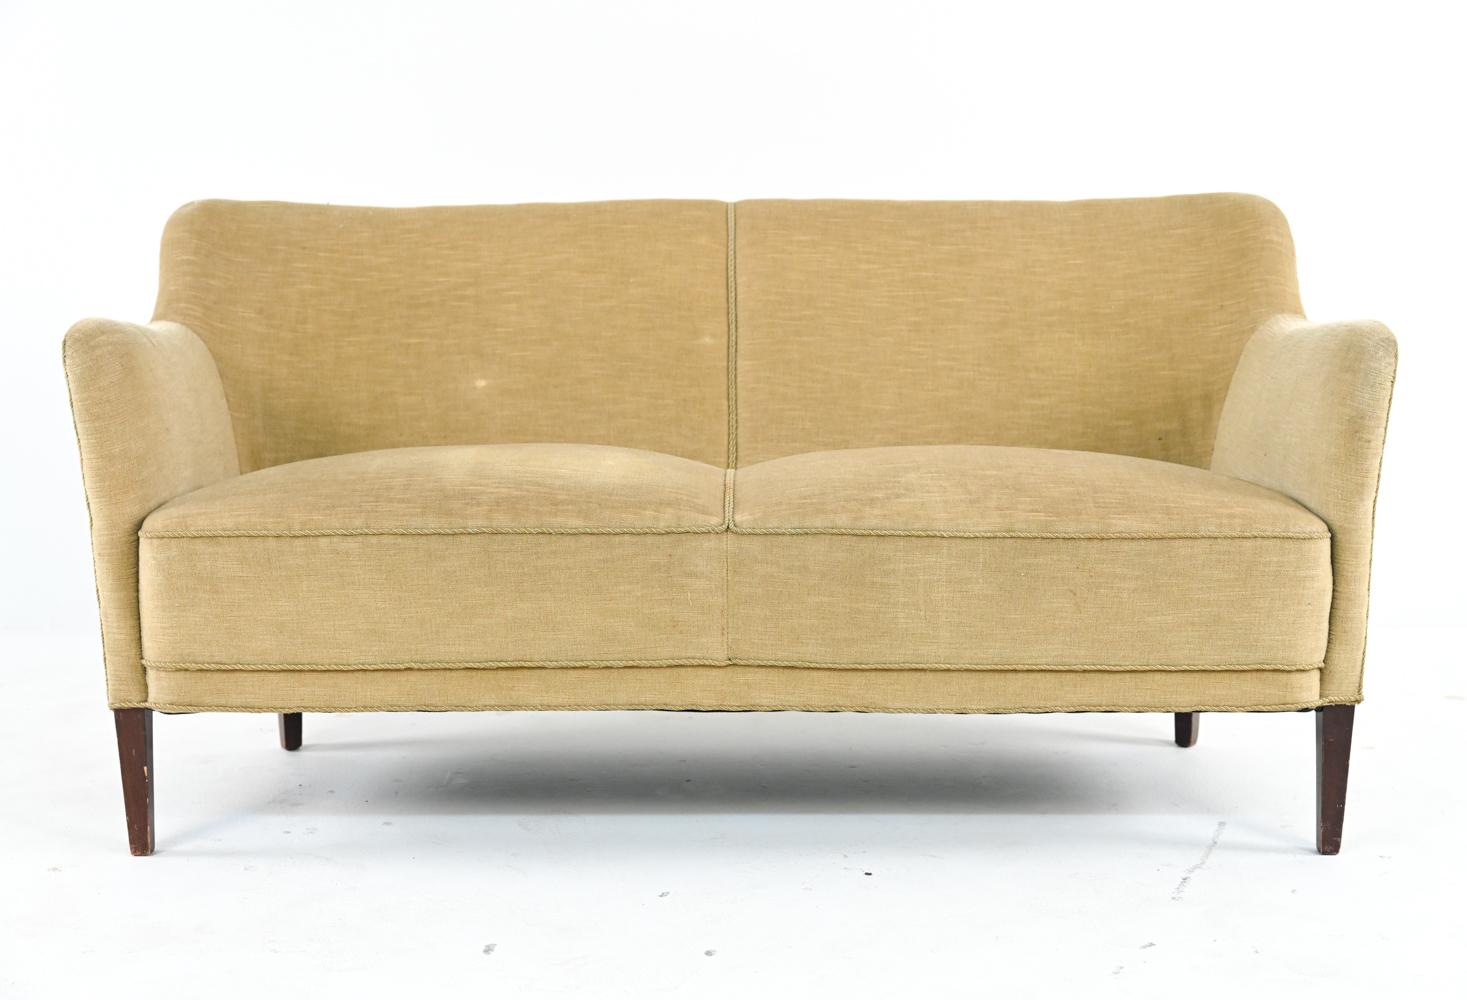 Mit seiner verspielten, skulpturalen, modernen Silhouette und dem chartreusefarbenen, gewellten Mohair-Chenille-Bezug ist dieses Sofa wie ein Hauch von grüner Frühlingsluft. Auf spitz zulaufenden Beinen aus gebeiztem Buchenholz steht dieses